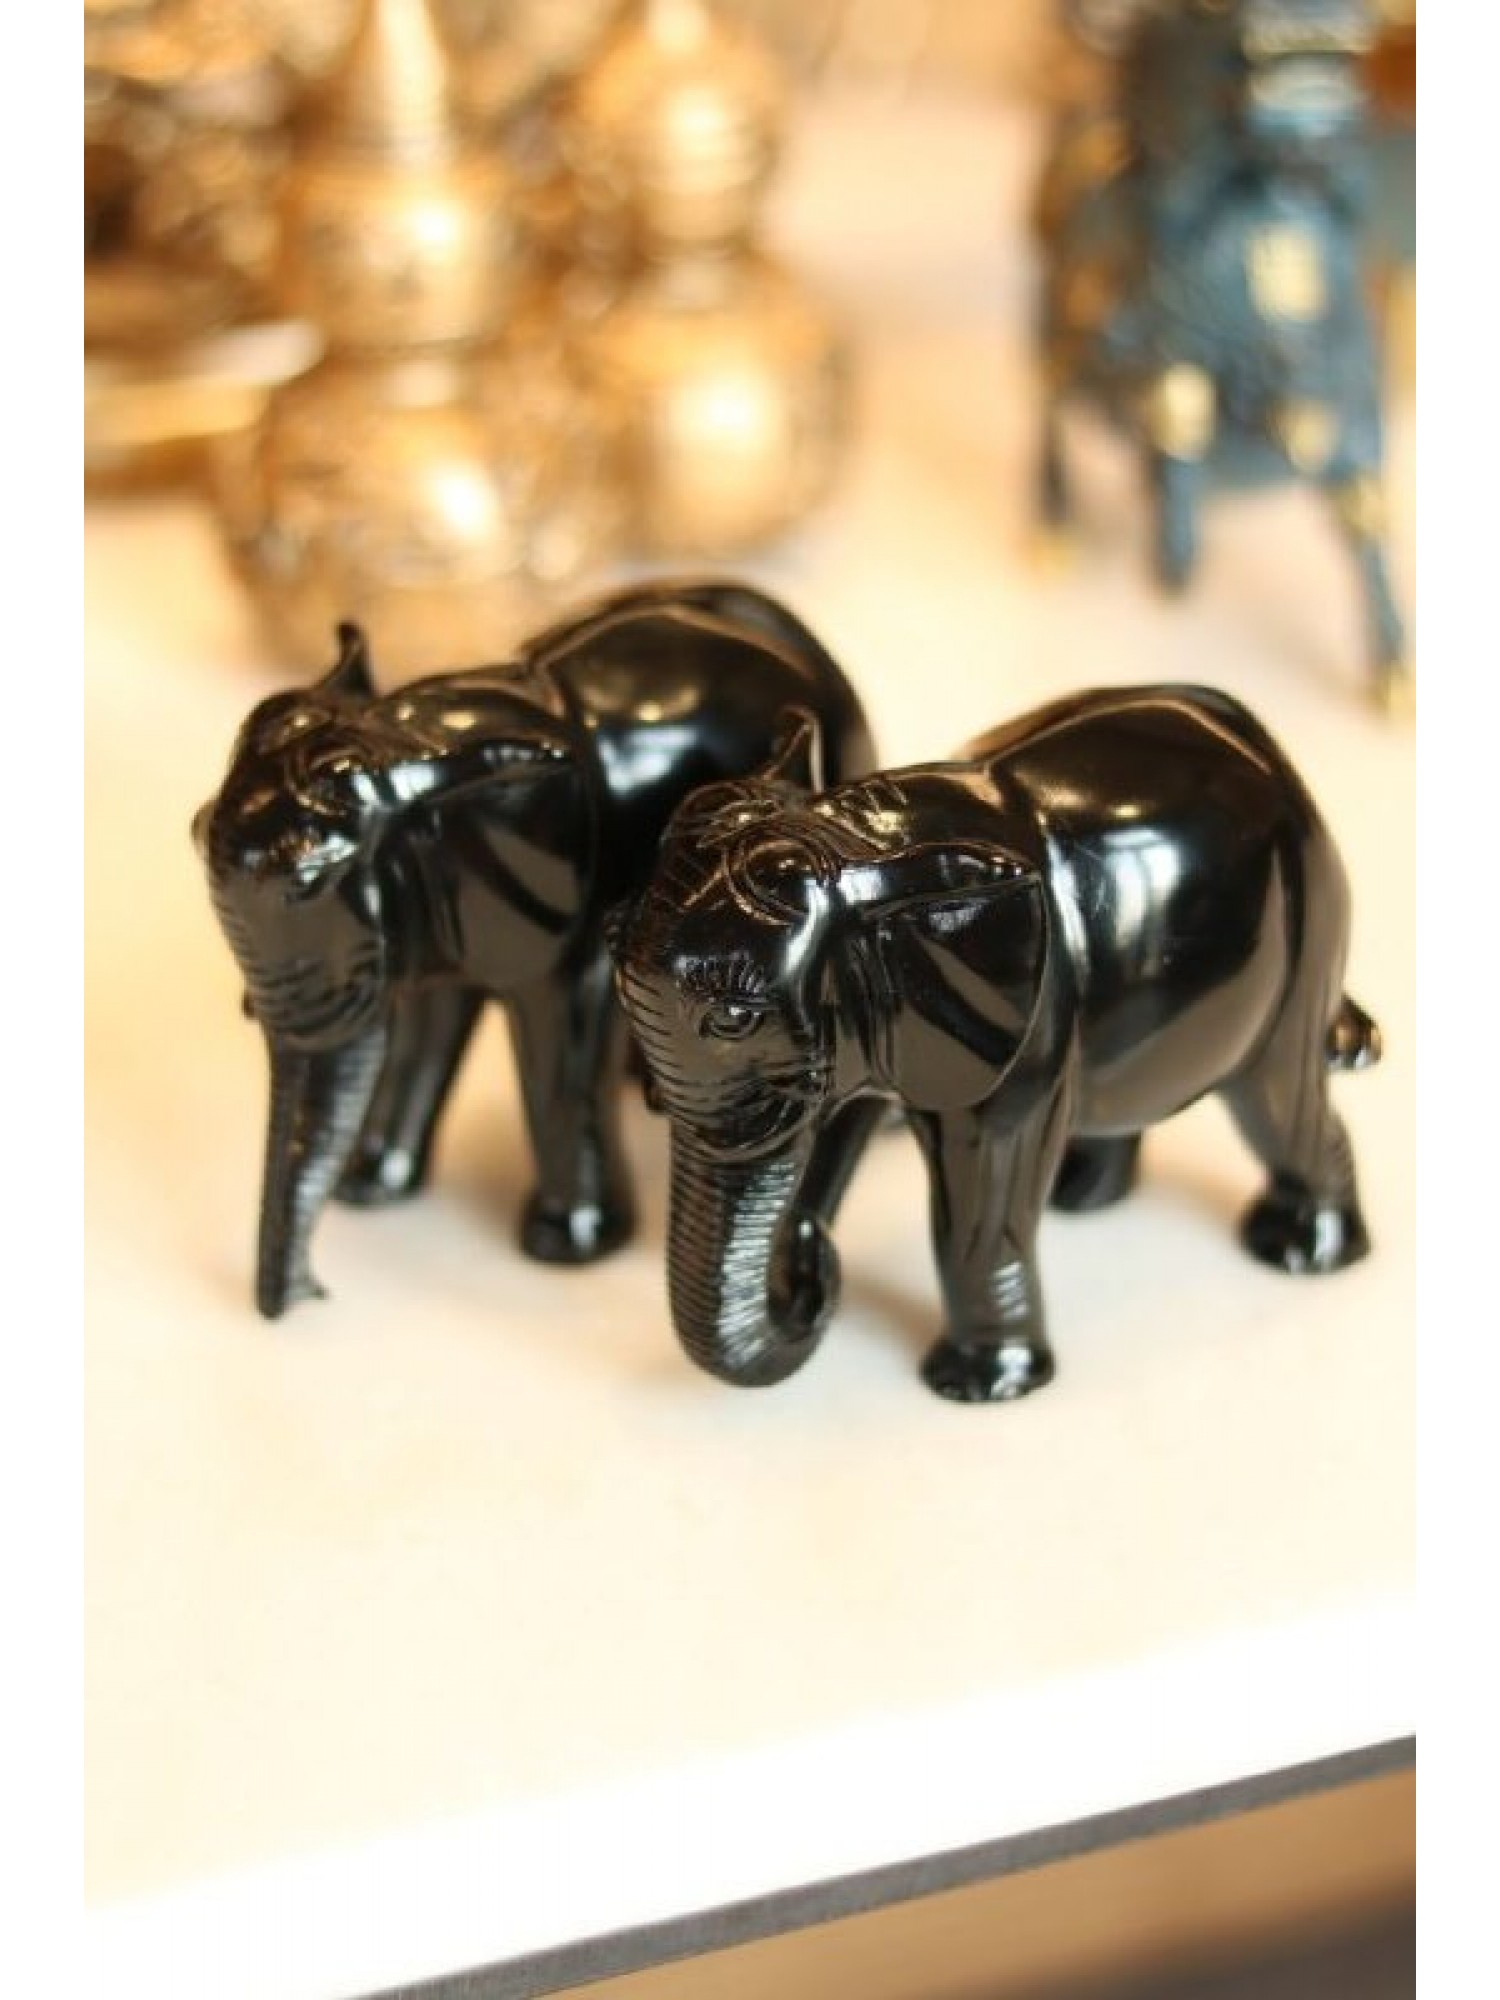 Статуэтка "Пара слонов" с опущенным хоботом (из черной смолы)